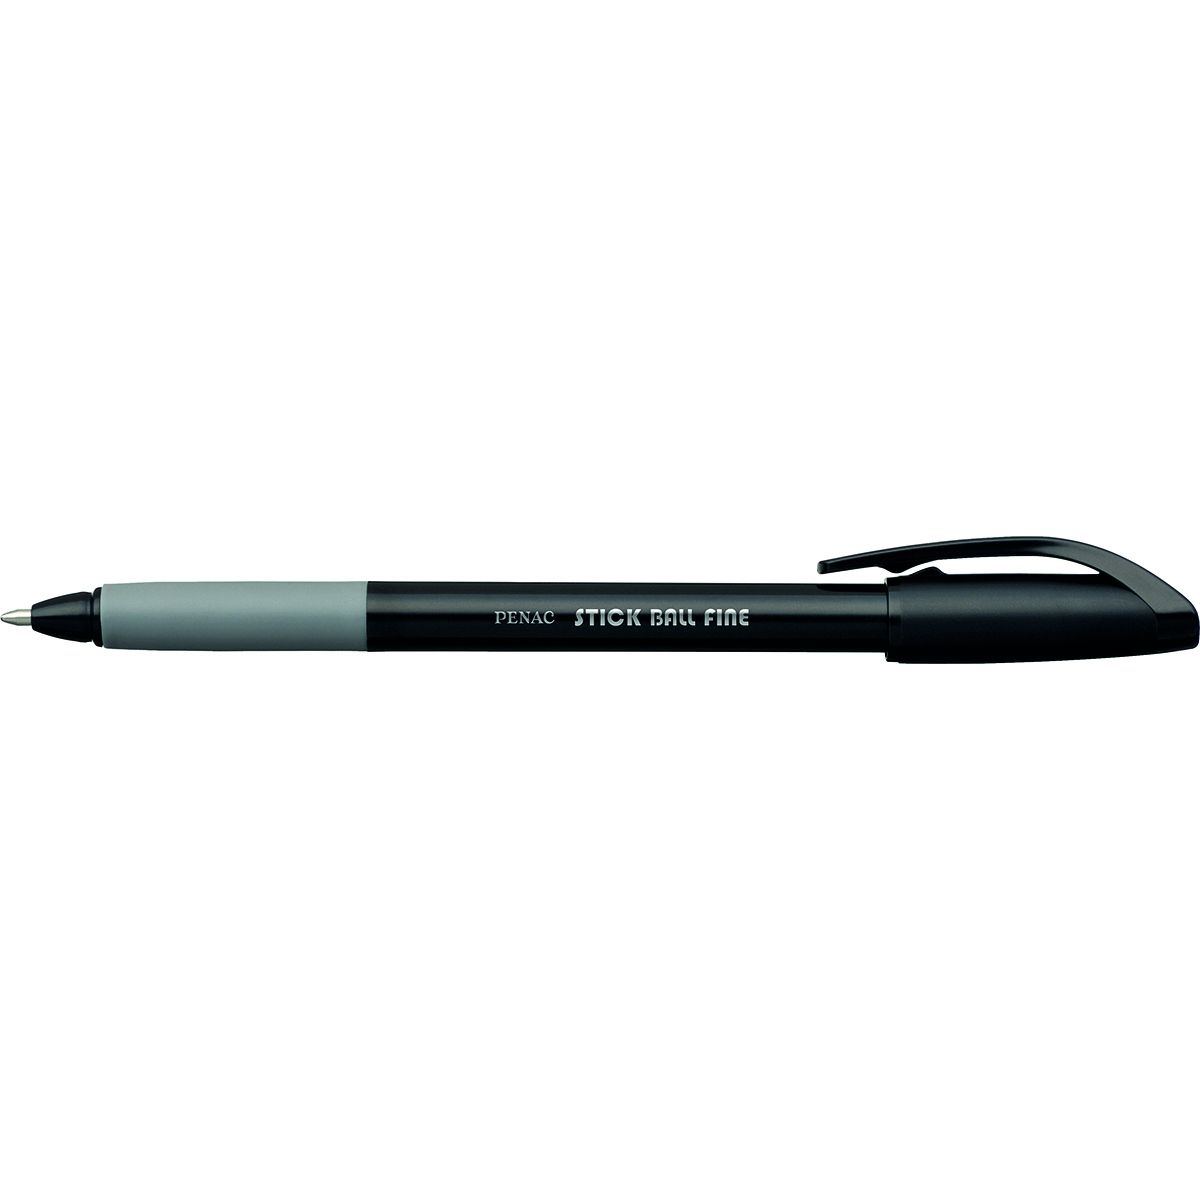 Długopis Penac stick ball fine czarny (jba340106f-01)